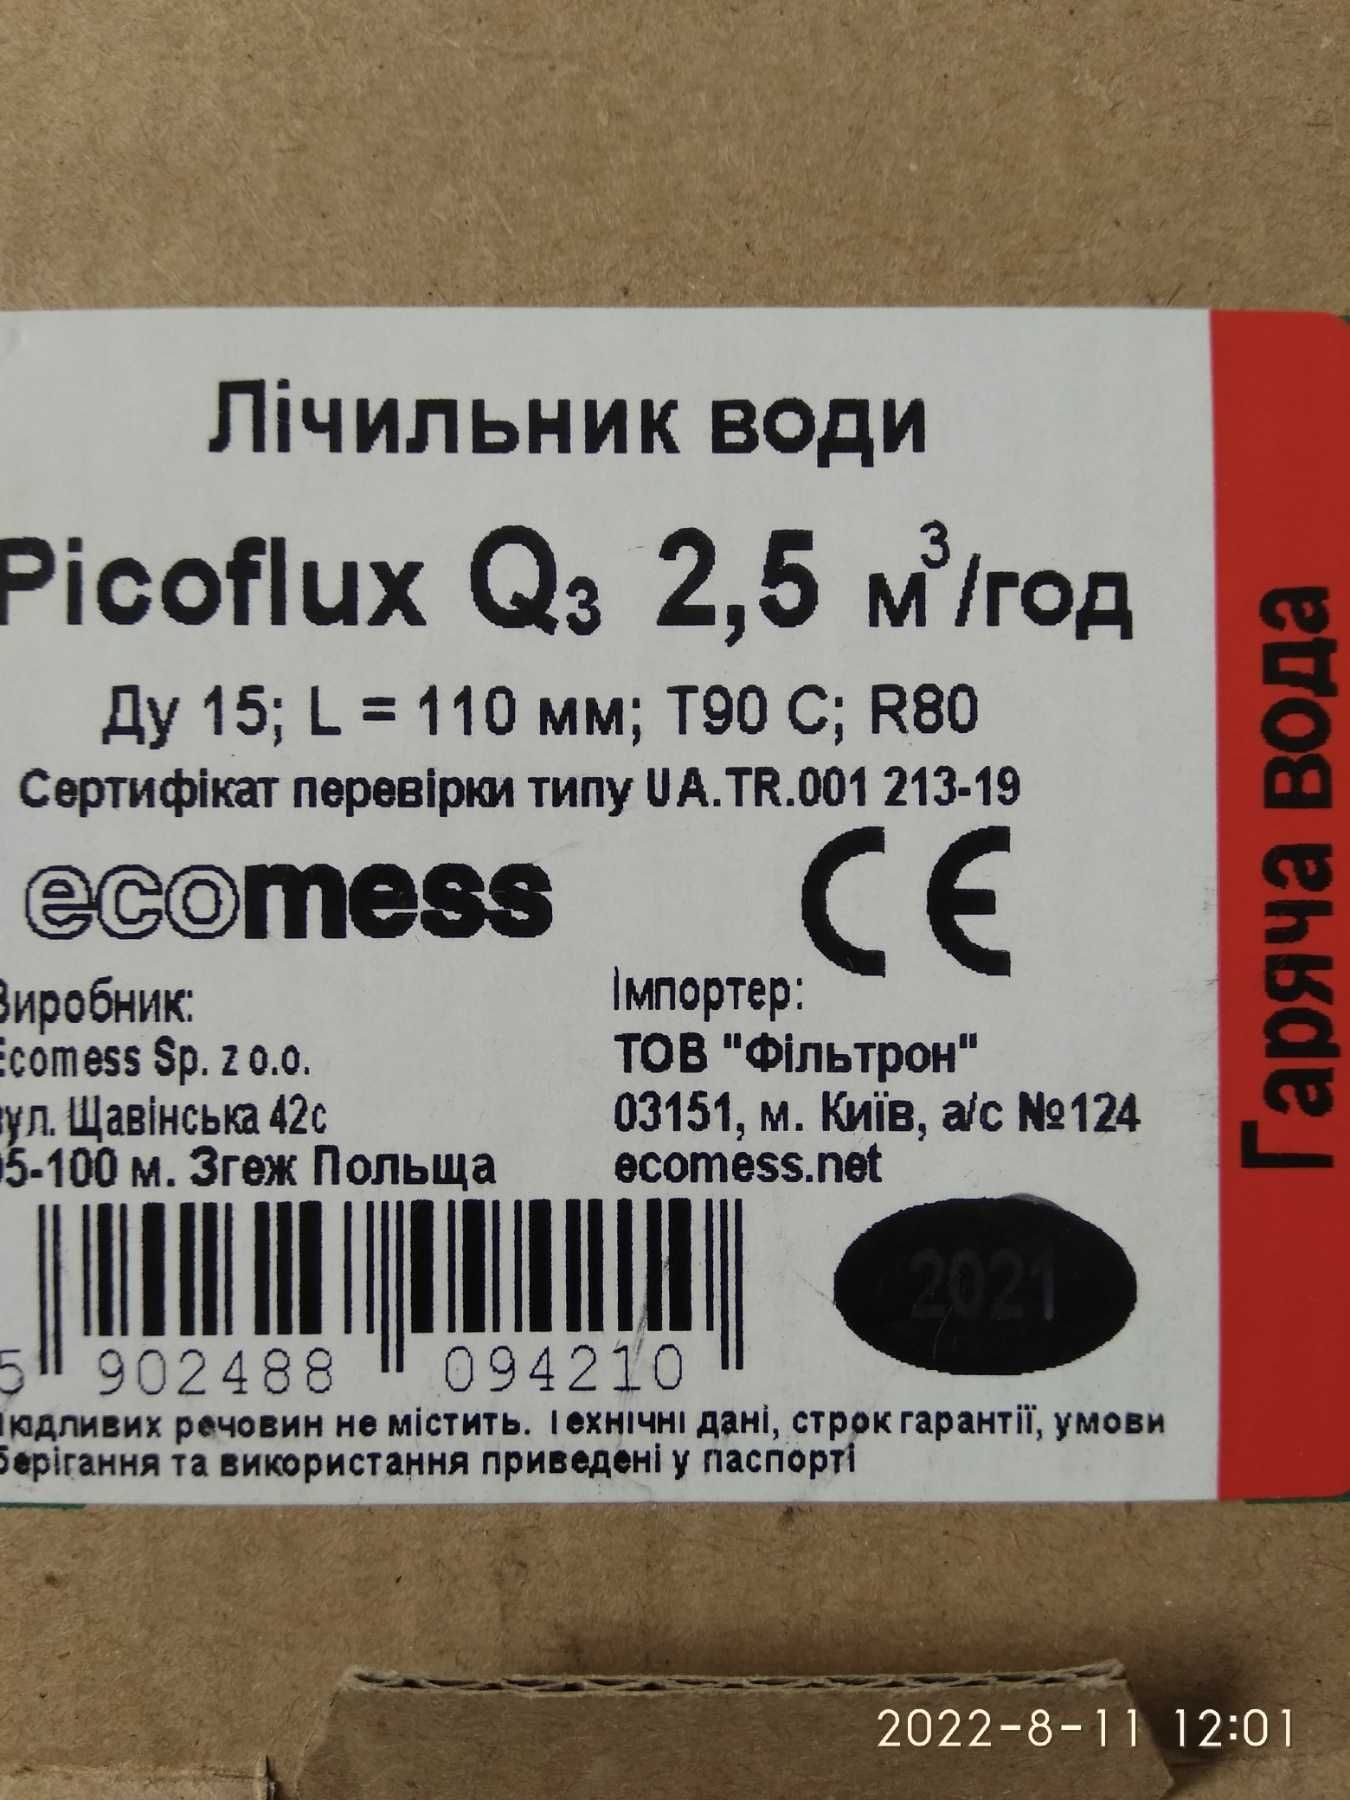 Польские  счетчики, горячая, хлодная вода,  Picoflux